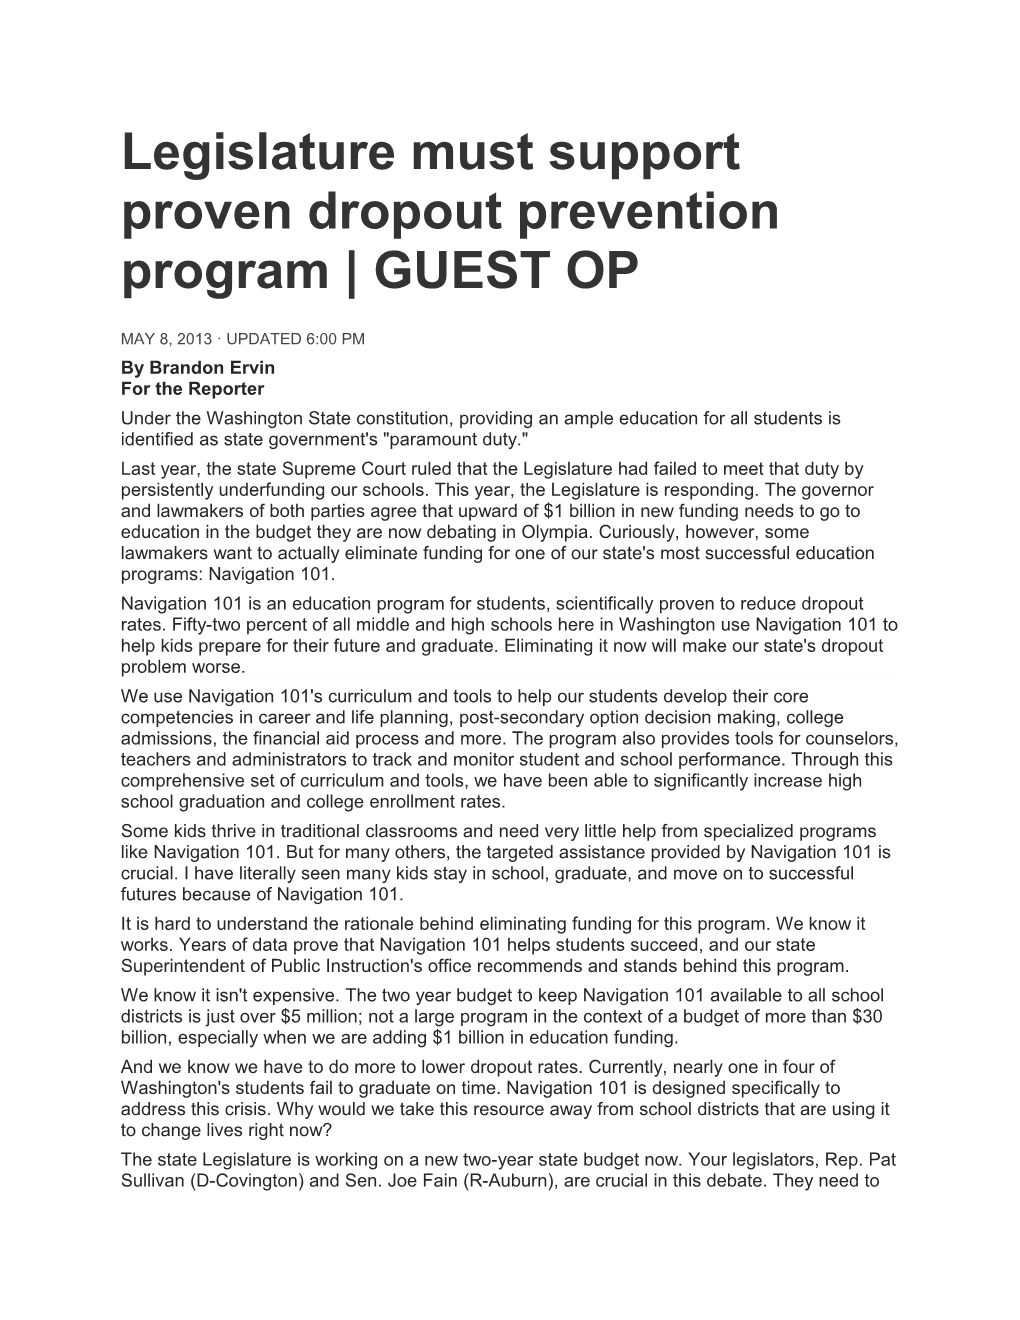 Legislature Must Support Proven Dropout Prevention Program GUEST OP